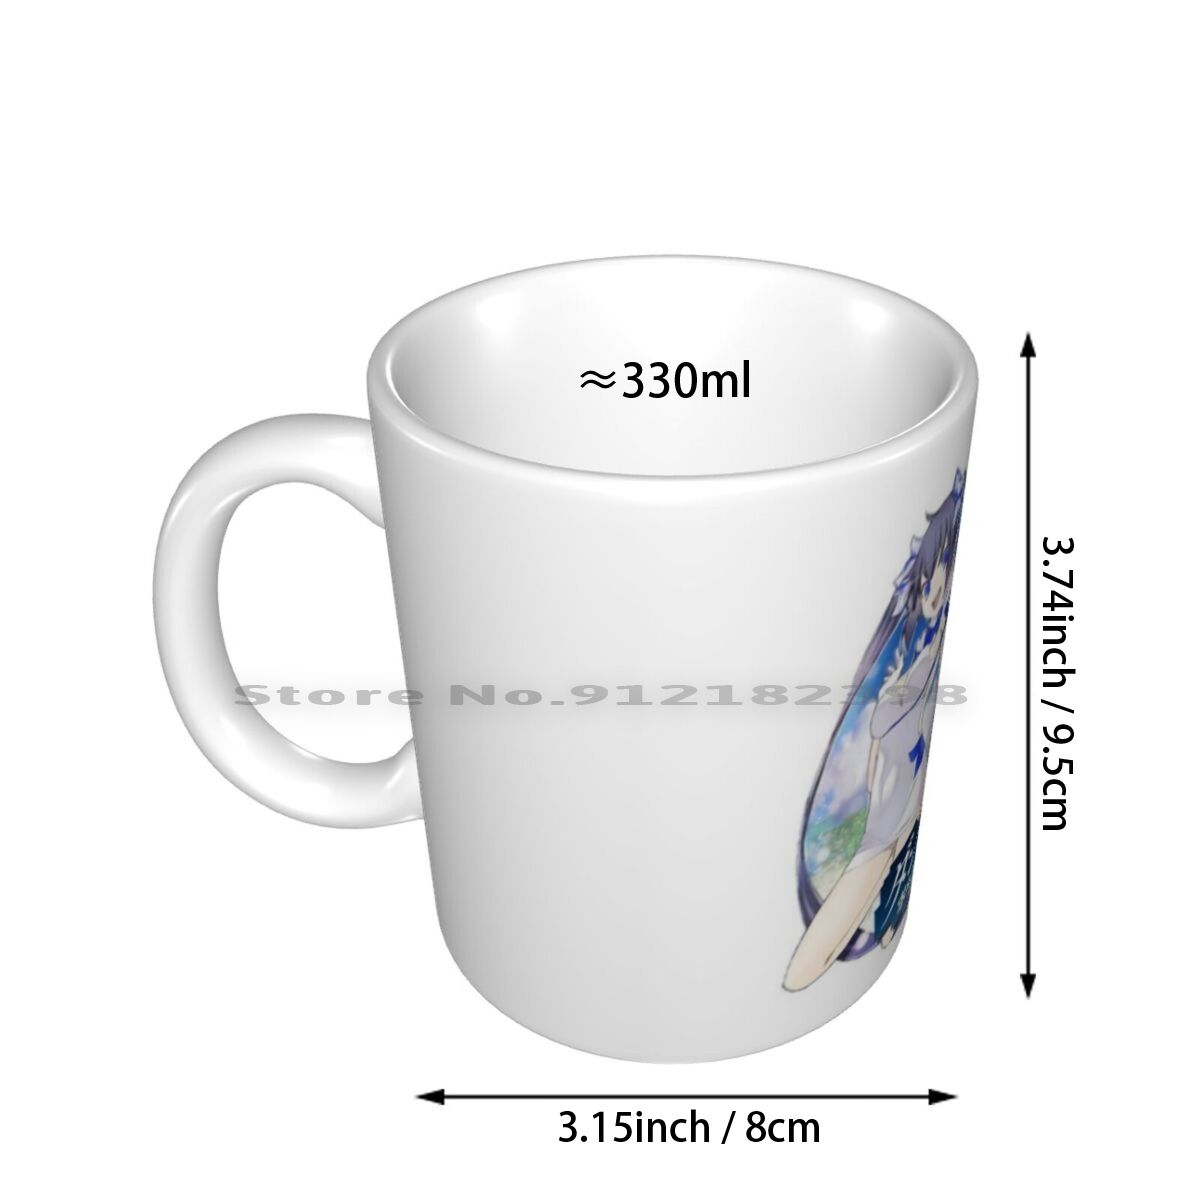 DanMachi – Different Characters Themed Ceramic Mugs (20+ Designs) Mugs